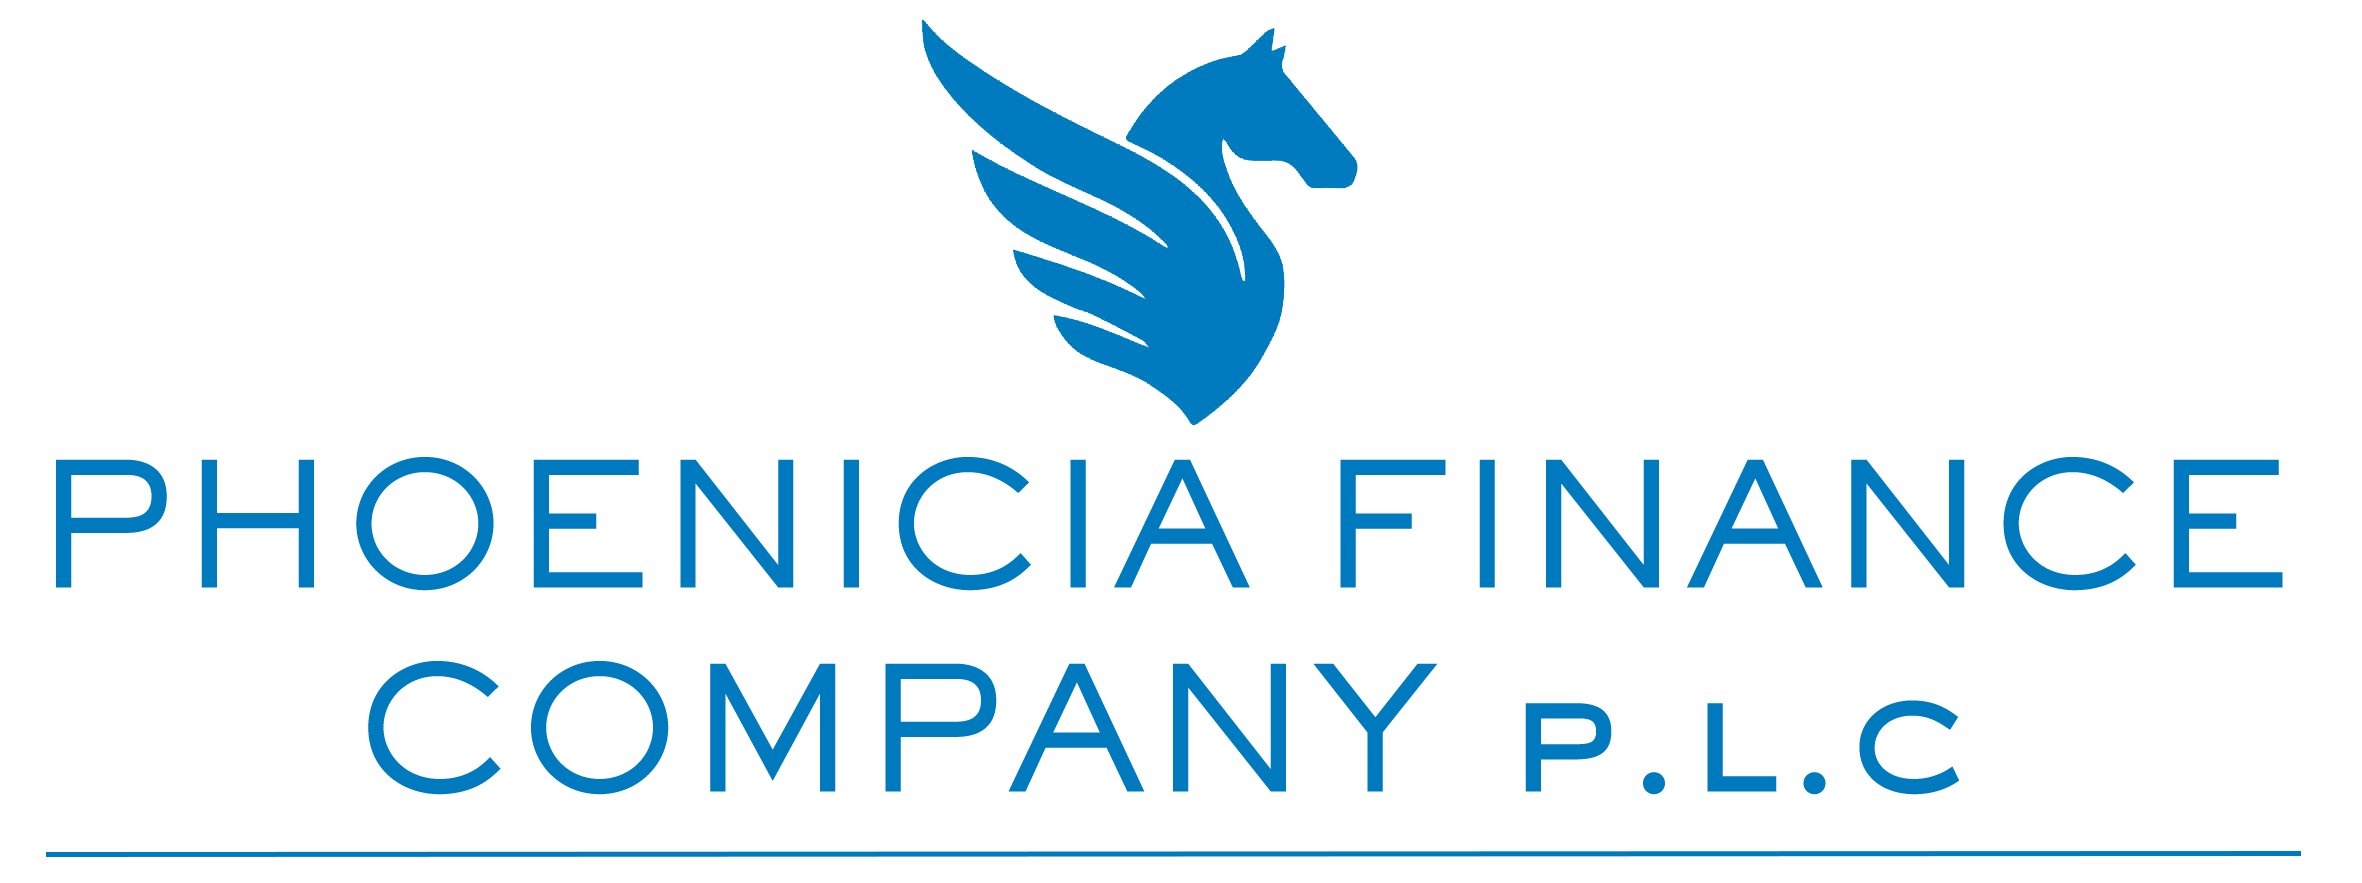 Phoenicia Finance Company p.l.c.